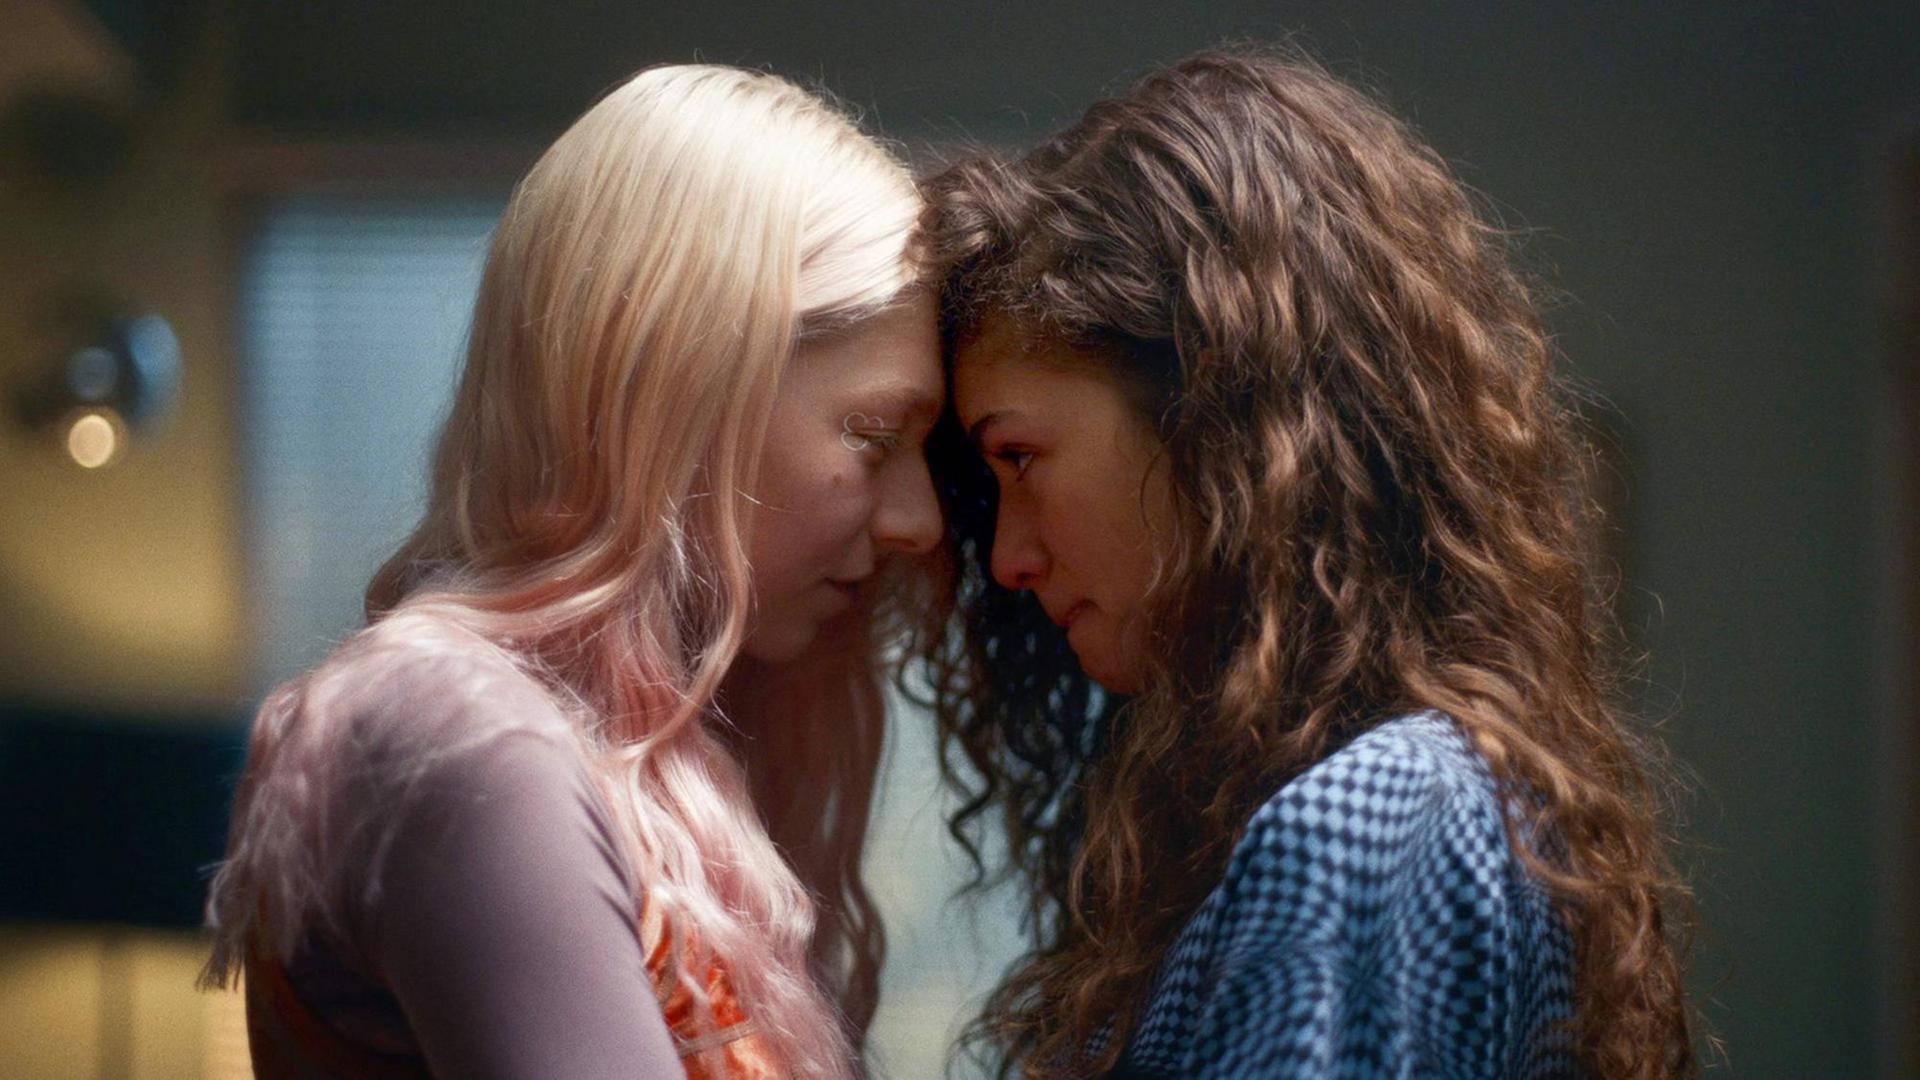 Szenenfoto aus "Euphoria": Zwei Mädchen stehen eng voreinander und gucken sich in die Augen, ihre Stirne berühren sich.